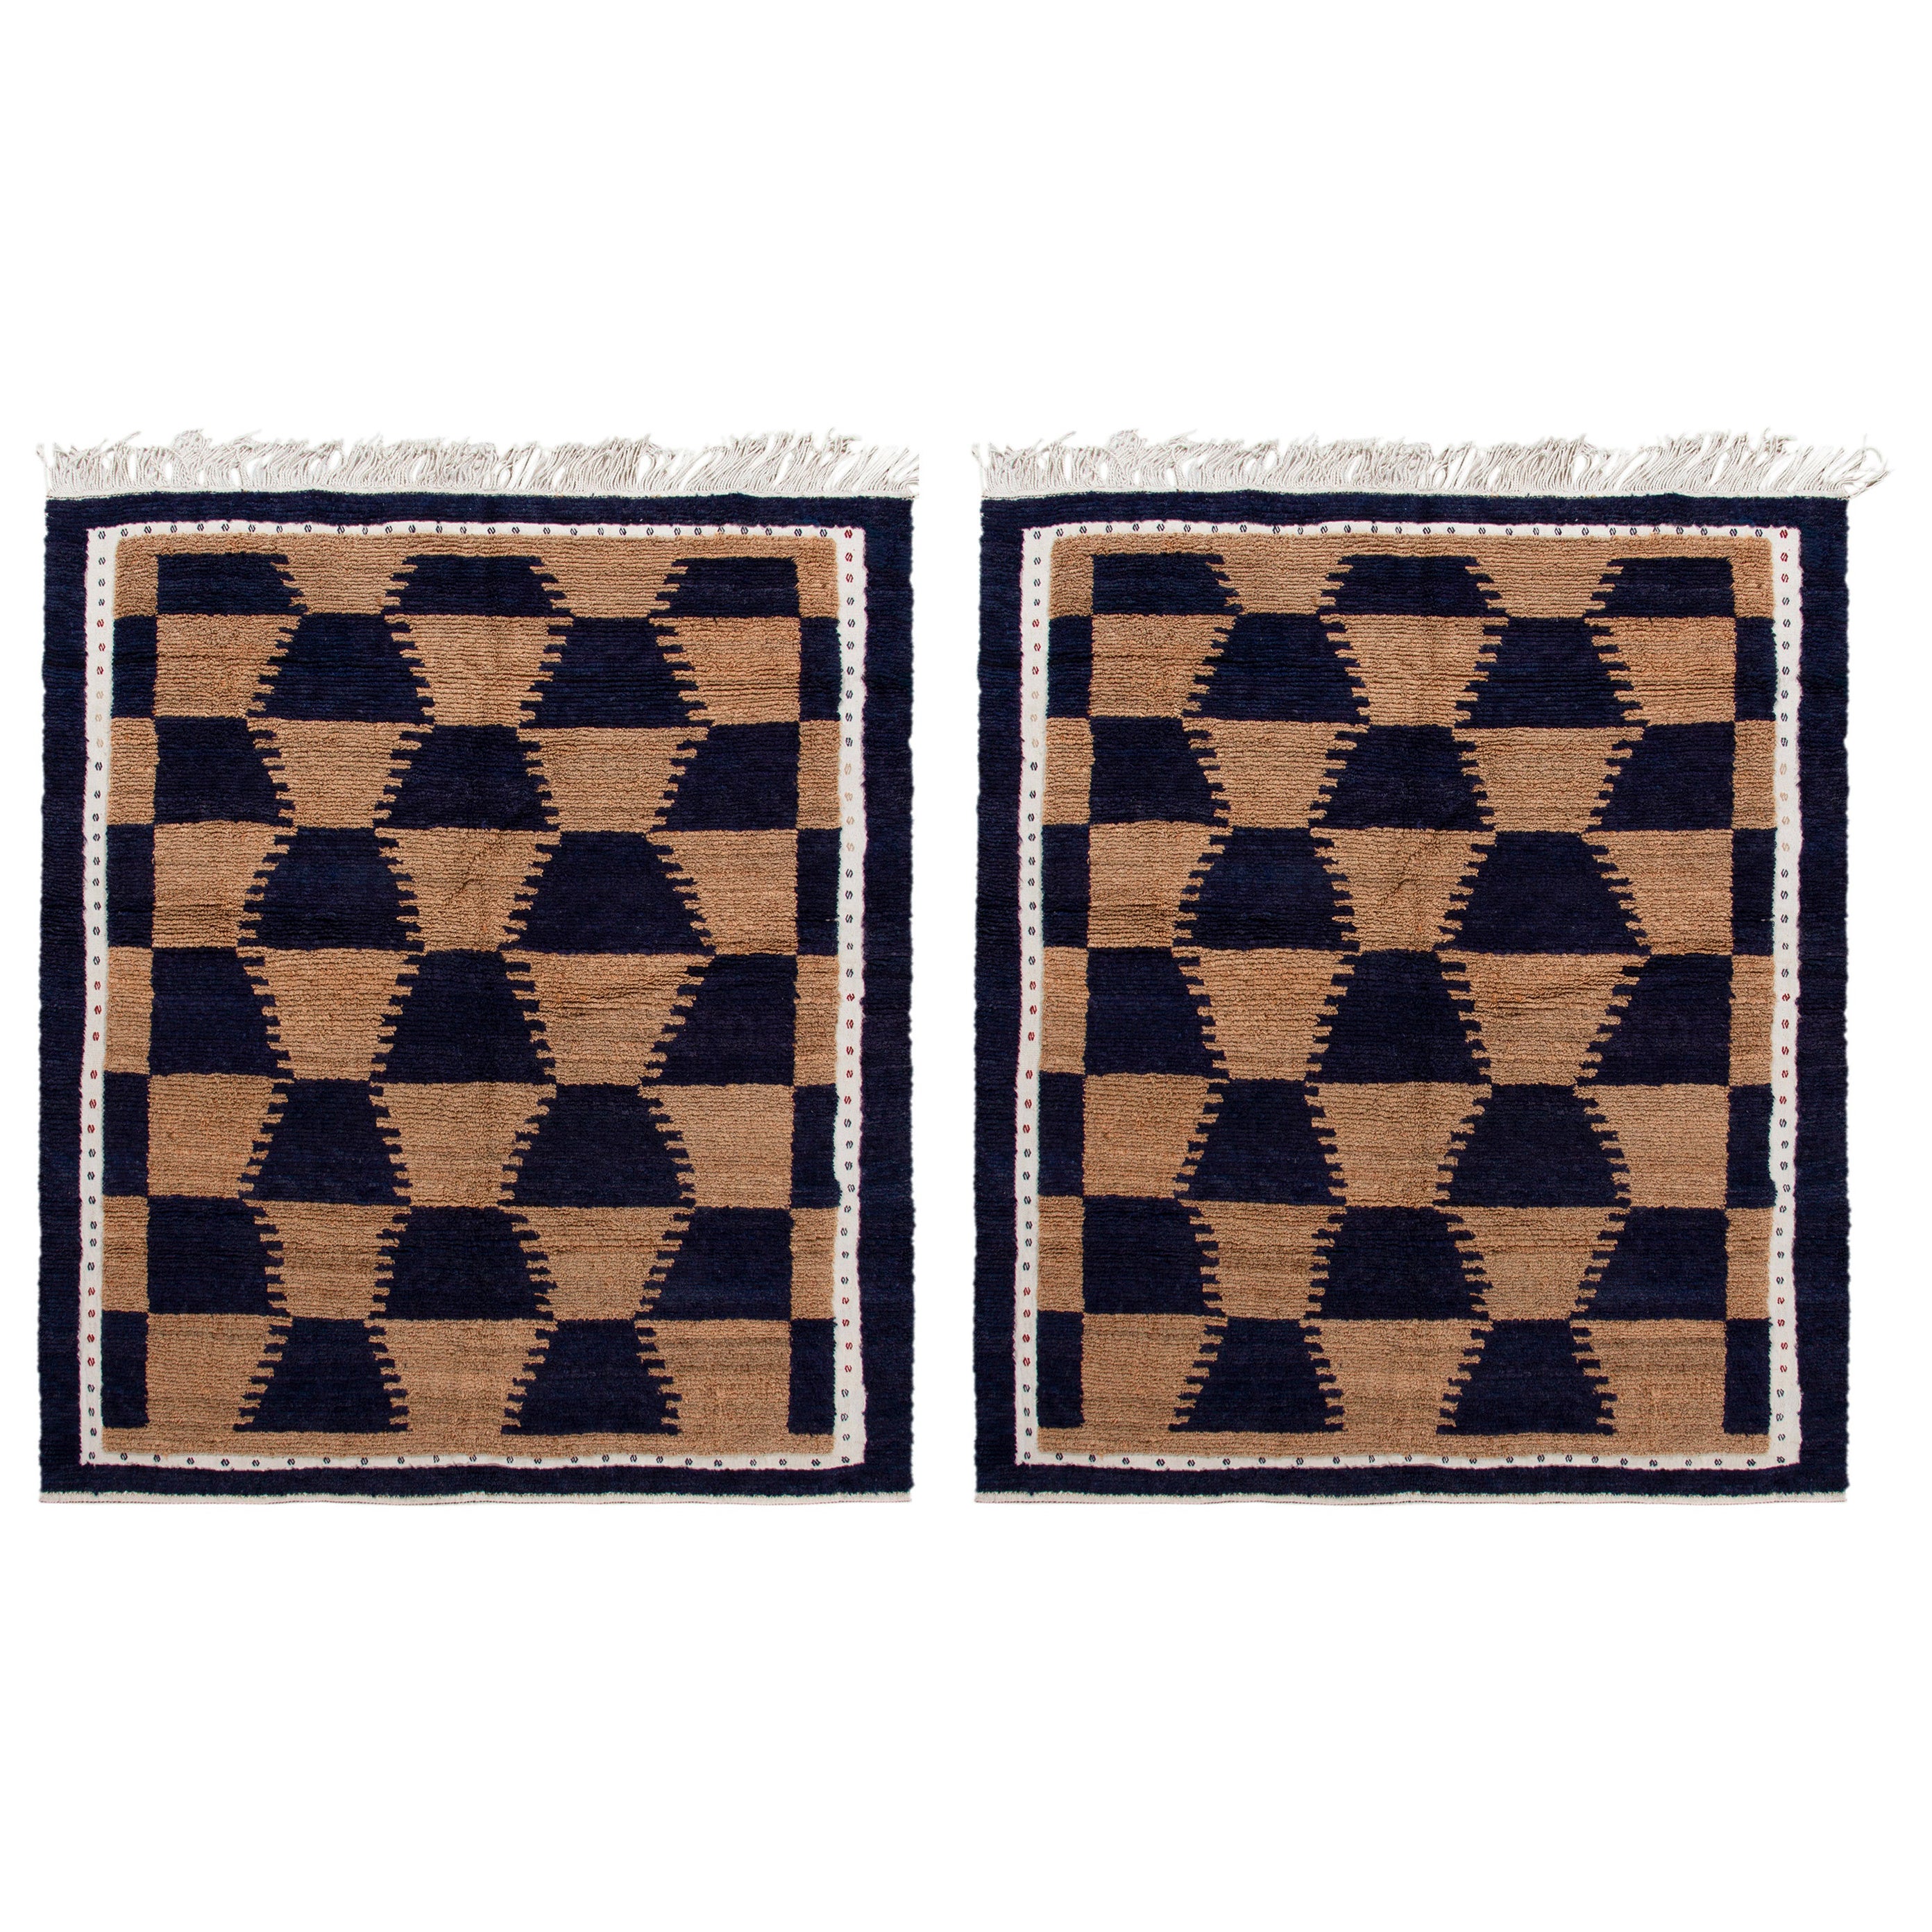 Twin Vintage Tulu Rugs in Brown and Dark Blue Geometric Patterns by Rug & Kilim